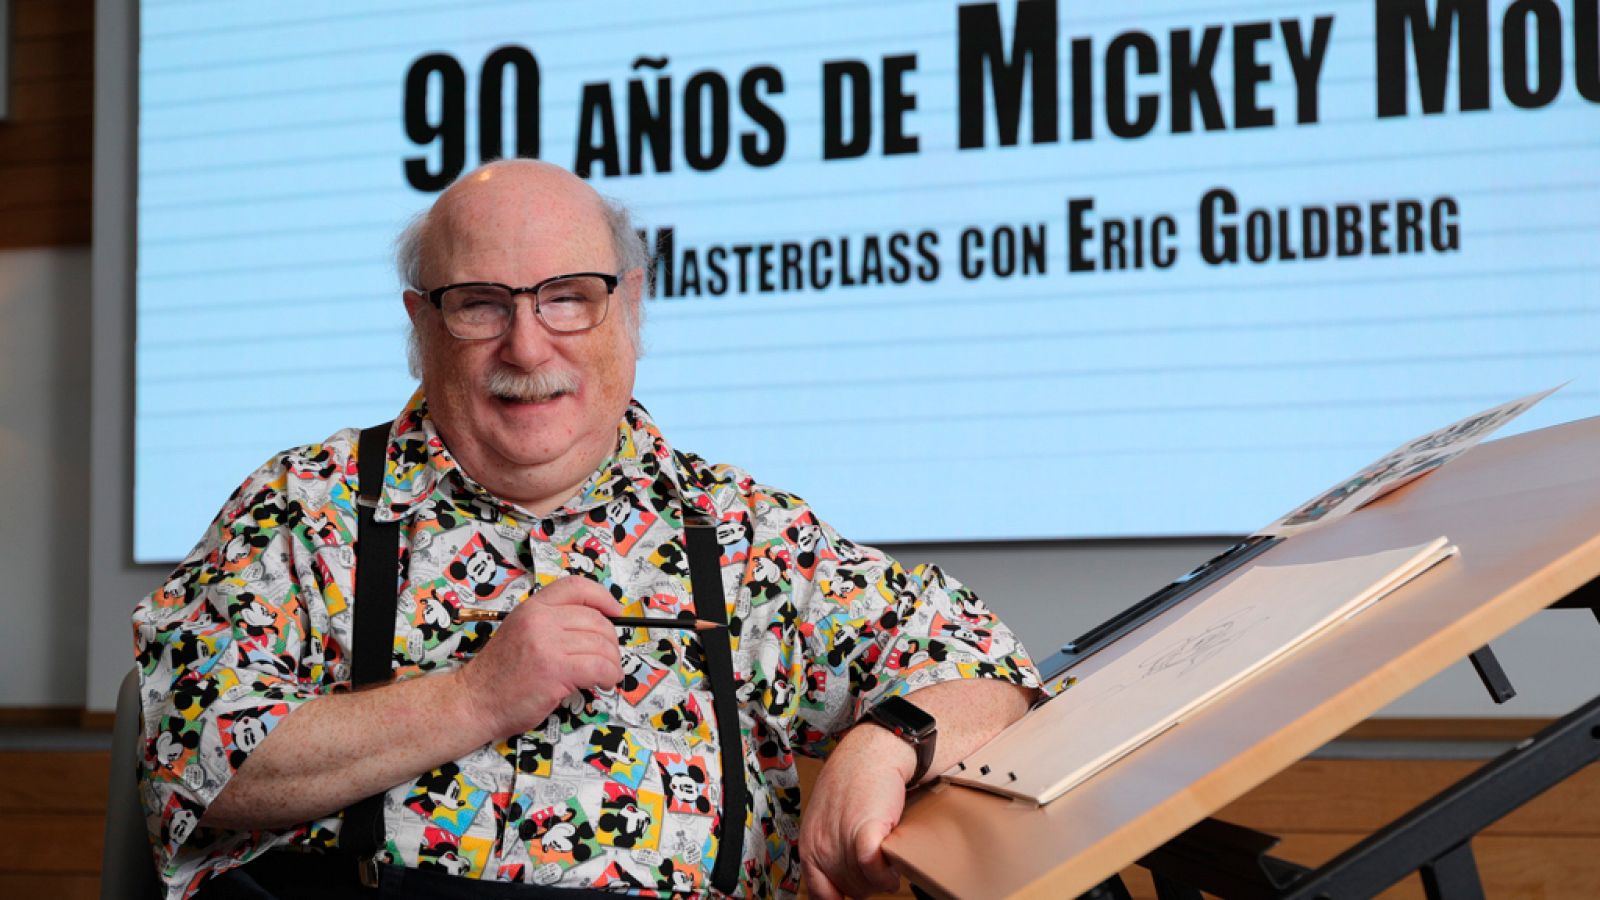 Telediario 1: Eric Goldberg imparte una clase magistral en Madrid para celebrar los 90 años de Mickey Mouse | RTVE Play